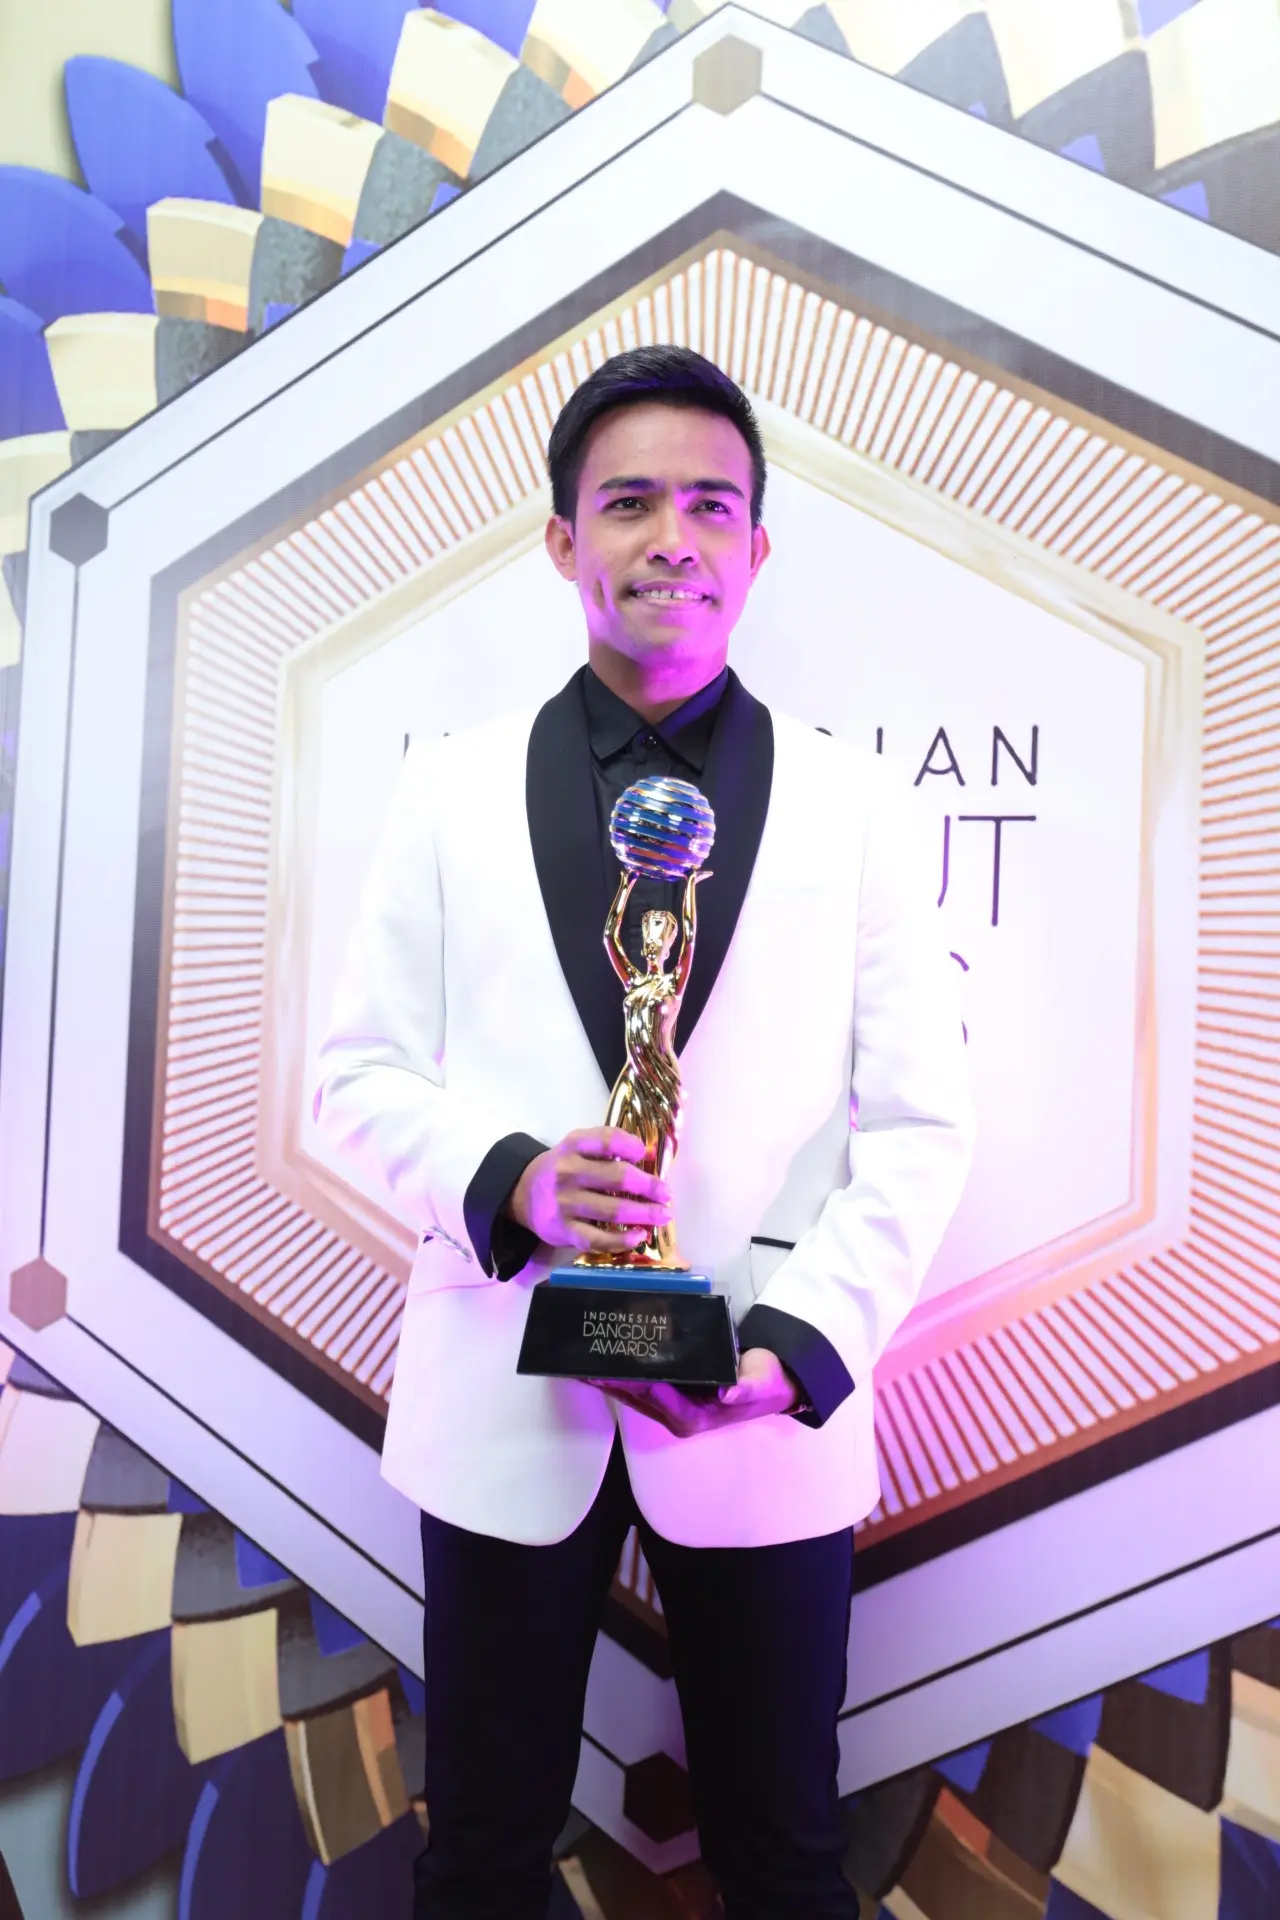 Fildan meraih kemenangan di Indonesian Dangdut Awards 2017. (Deki Prayoga/Bintang.com)